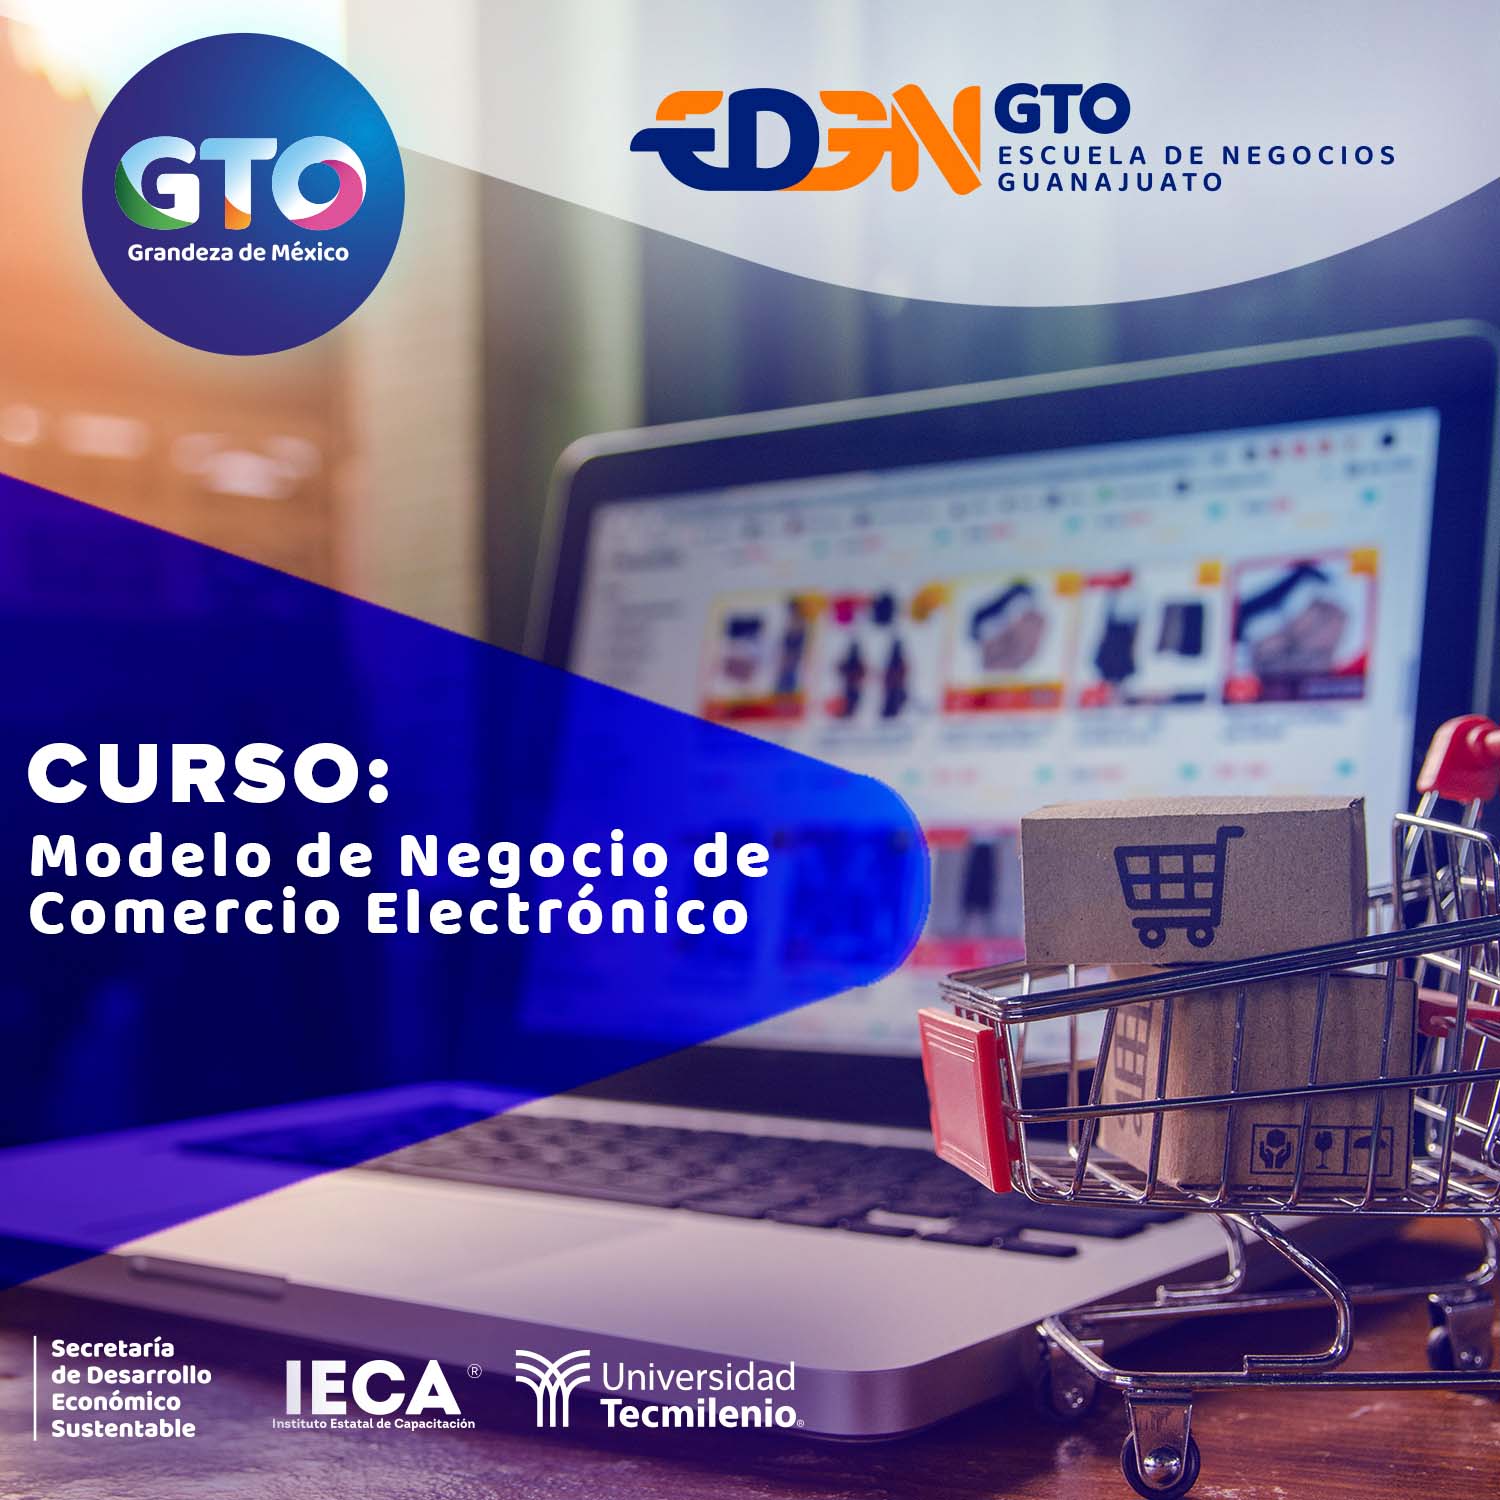 Modelos de Negocio de Comercio Electrónico - IECA Guanajuato - Instituto  Estatal de Capacitación.